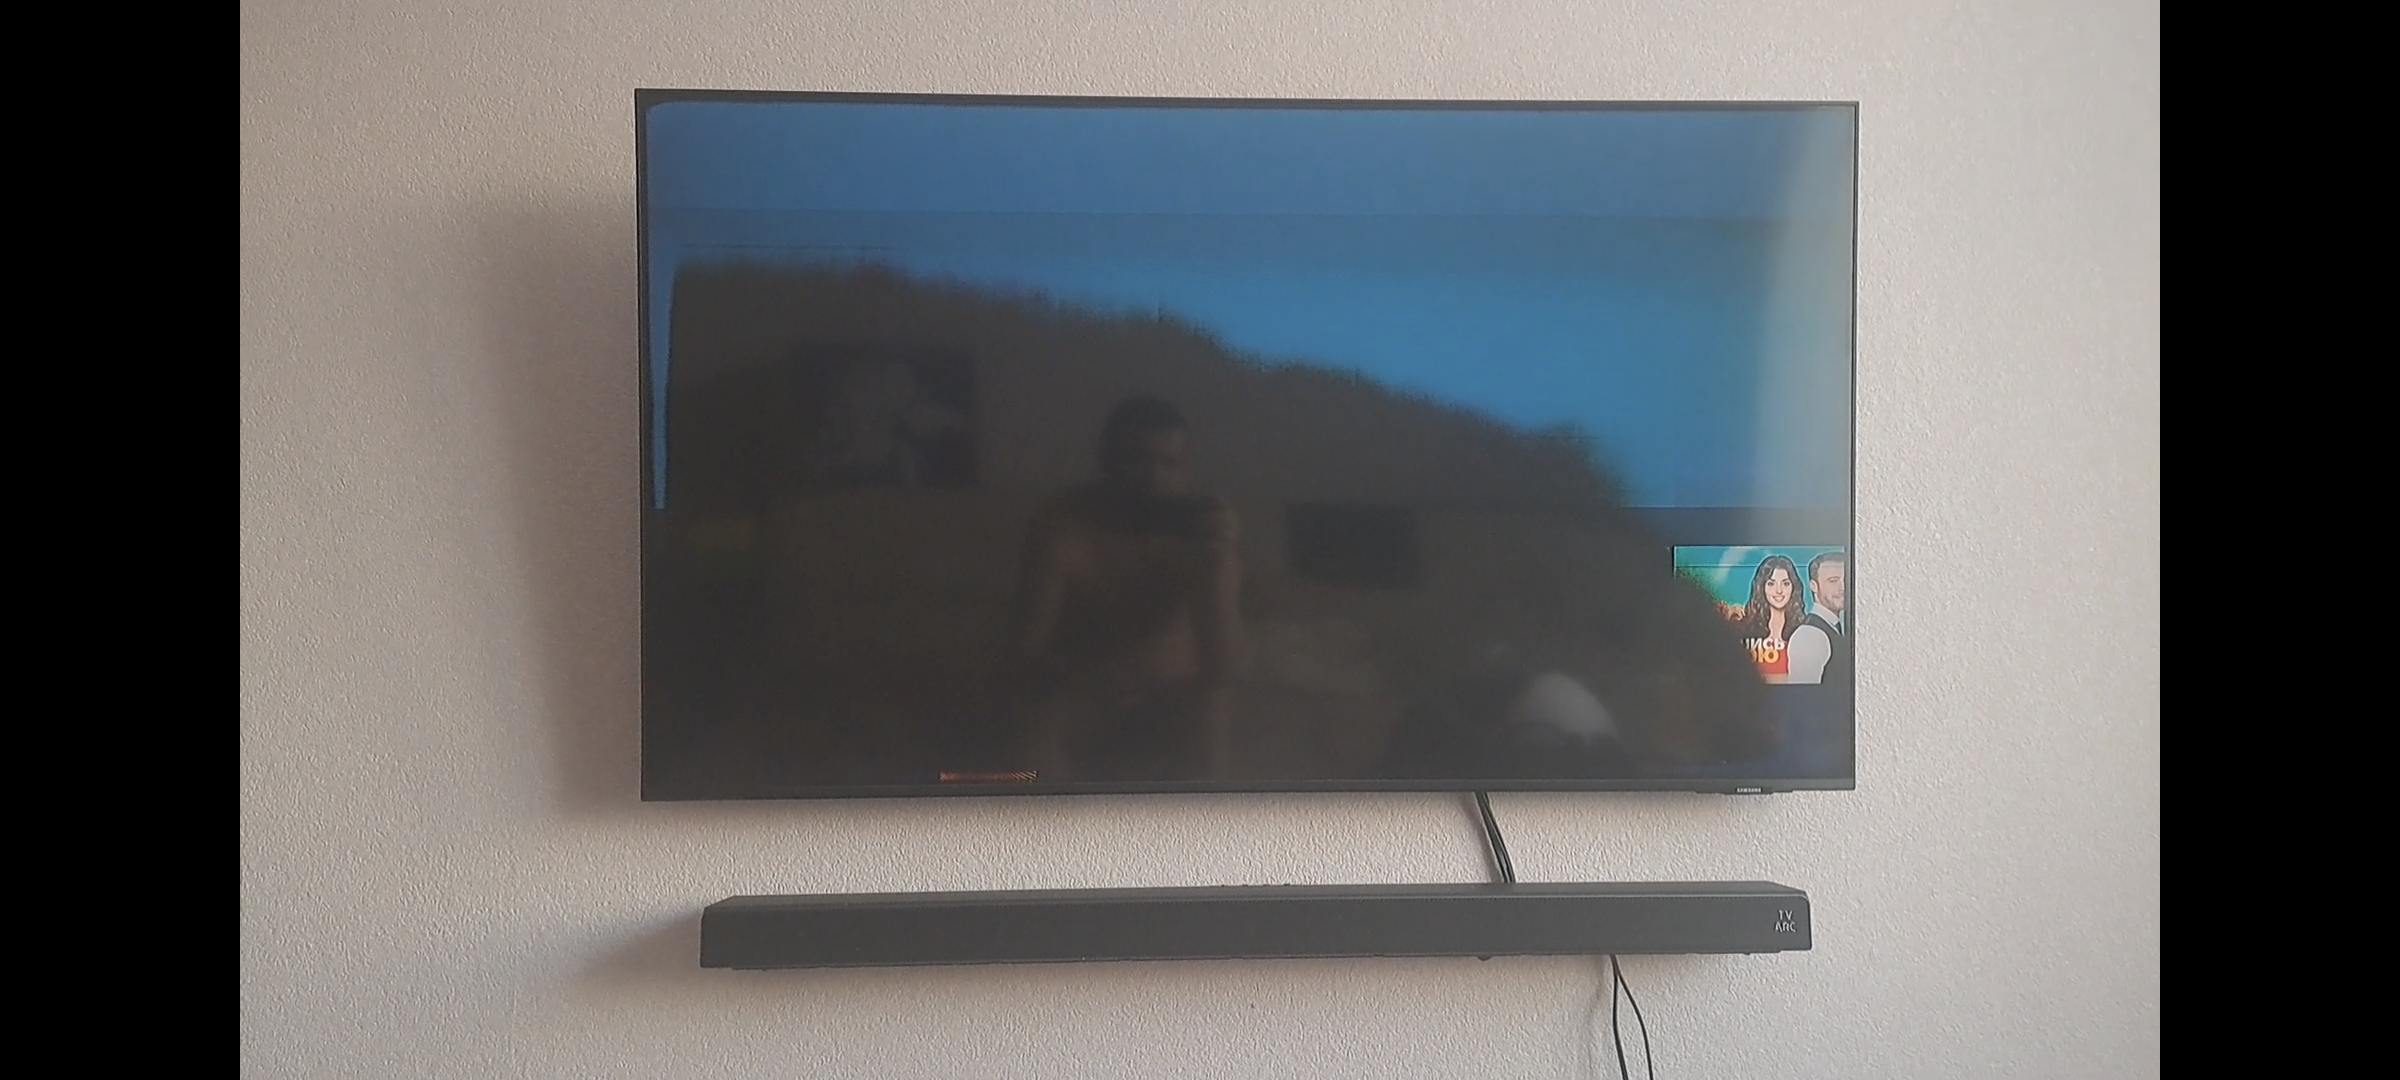 Можно ли отремонтировать плазменный телевизор, если разбит экран?